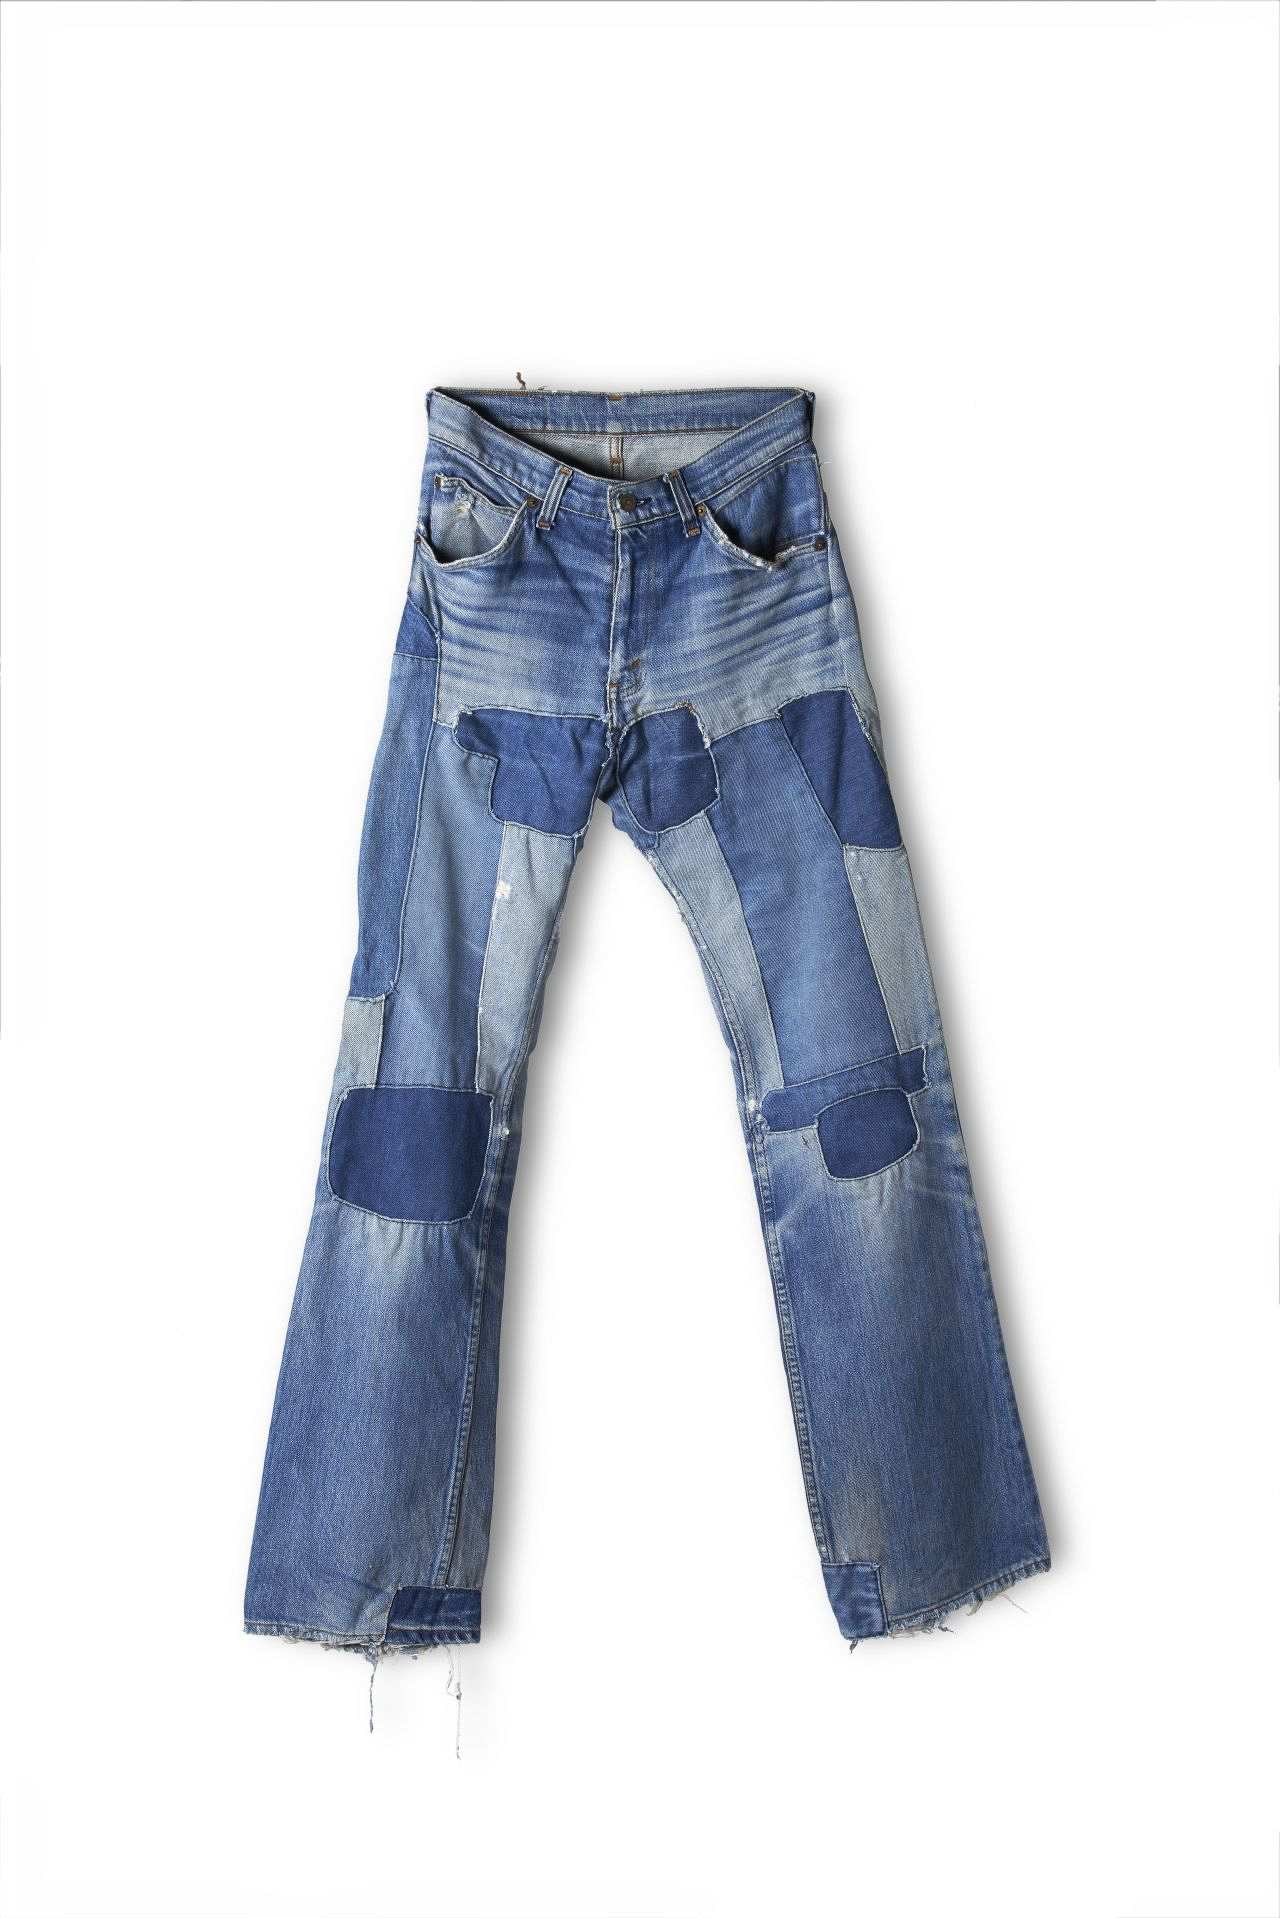 Blaue Jeanshose mit 5 Taschen, viele auf- und eingenähte Jeansflecken in unterschiedlichen Blautönen im Bereich der Oberschenkel, Knie und des Saums.